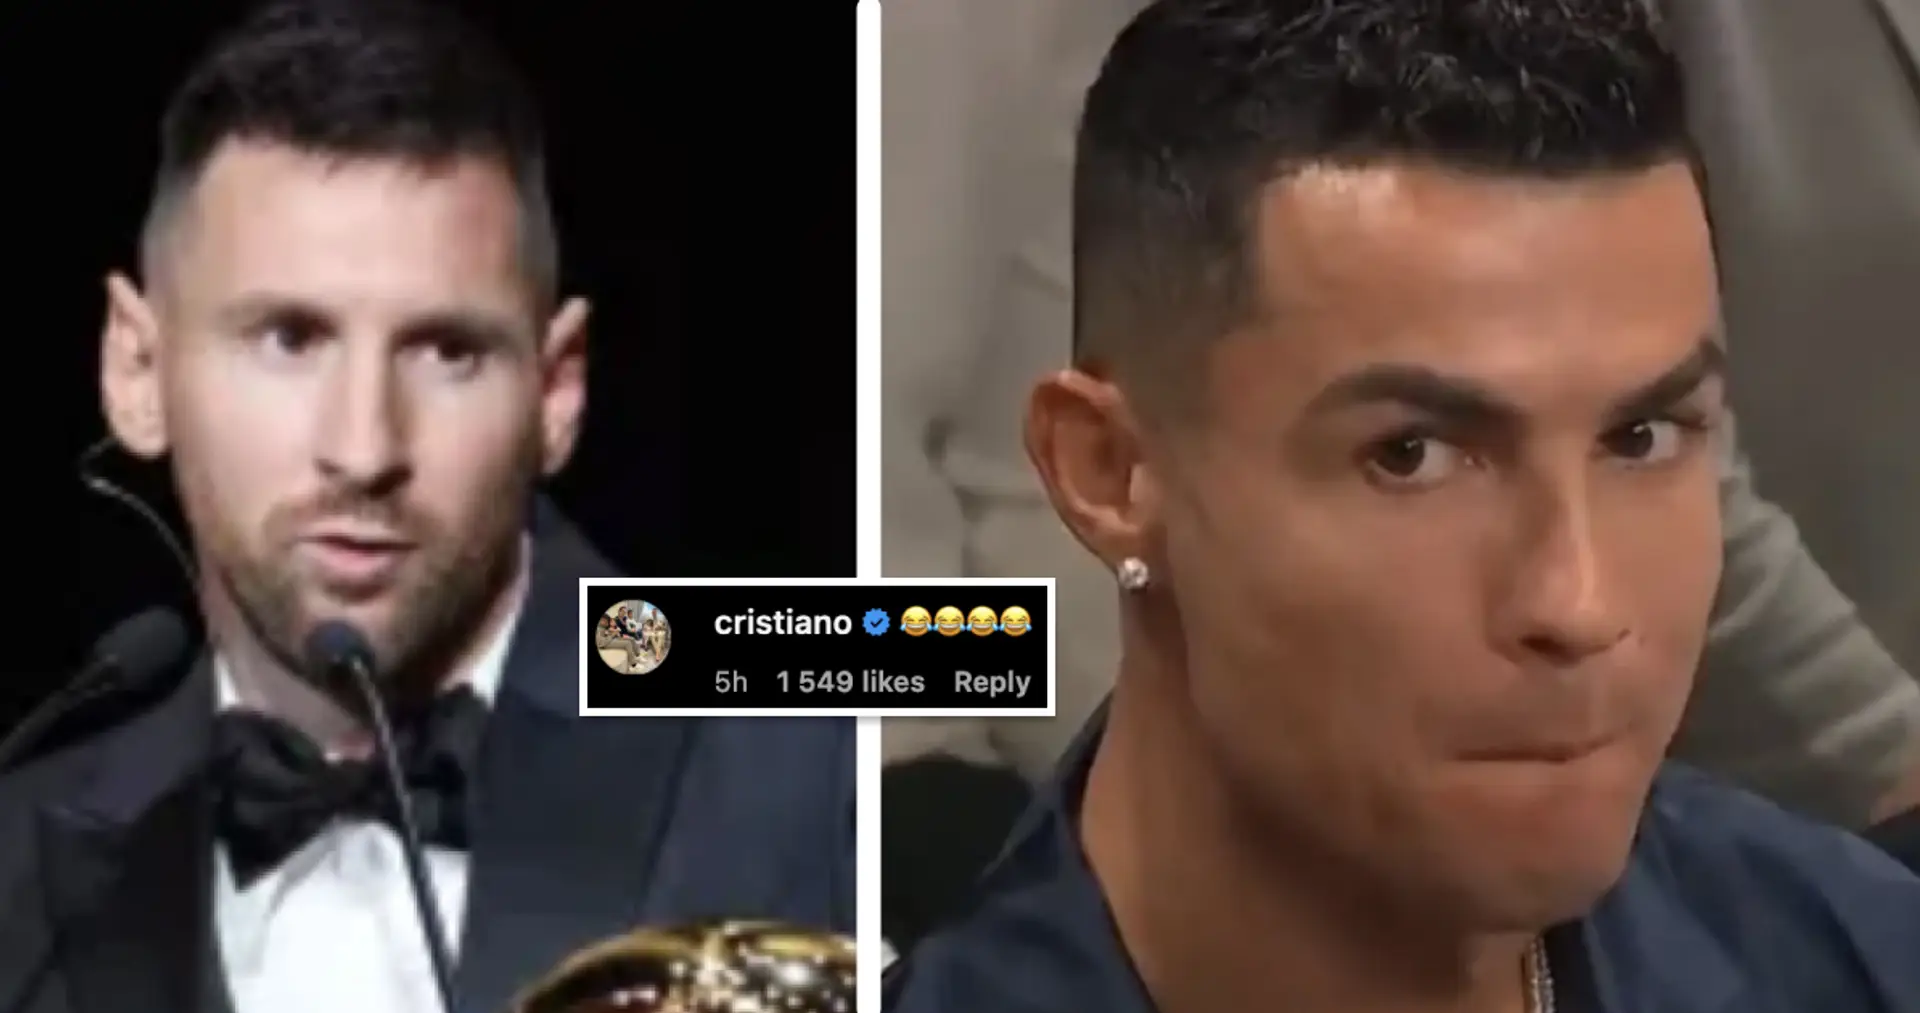 'Ganó el Mundial con 6 penaltis': Cristiano Ronaldo le da 'me gusta' al video burlándose de Messi por ganar el Balón de Oro